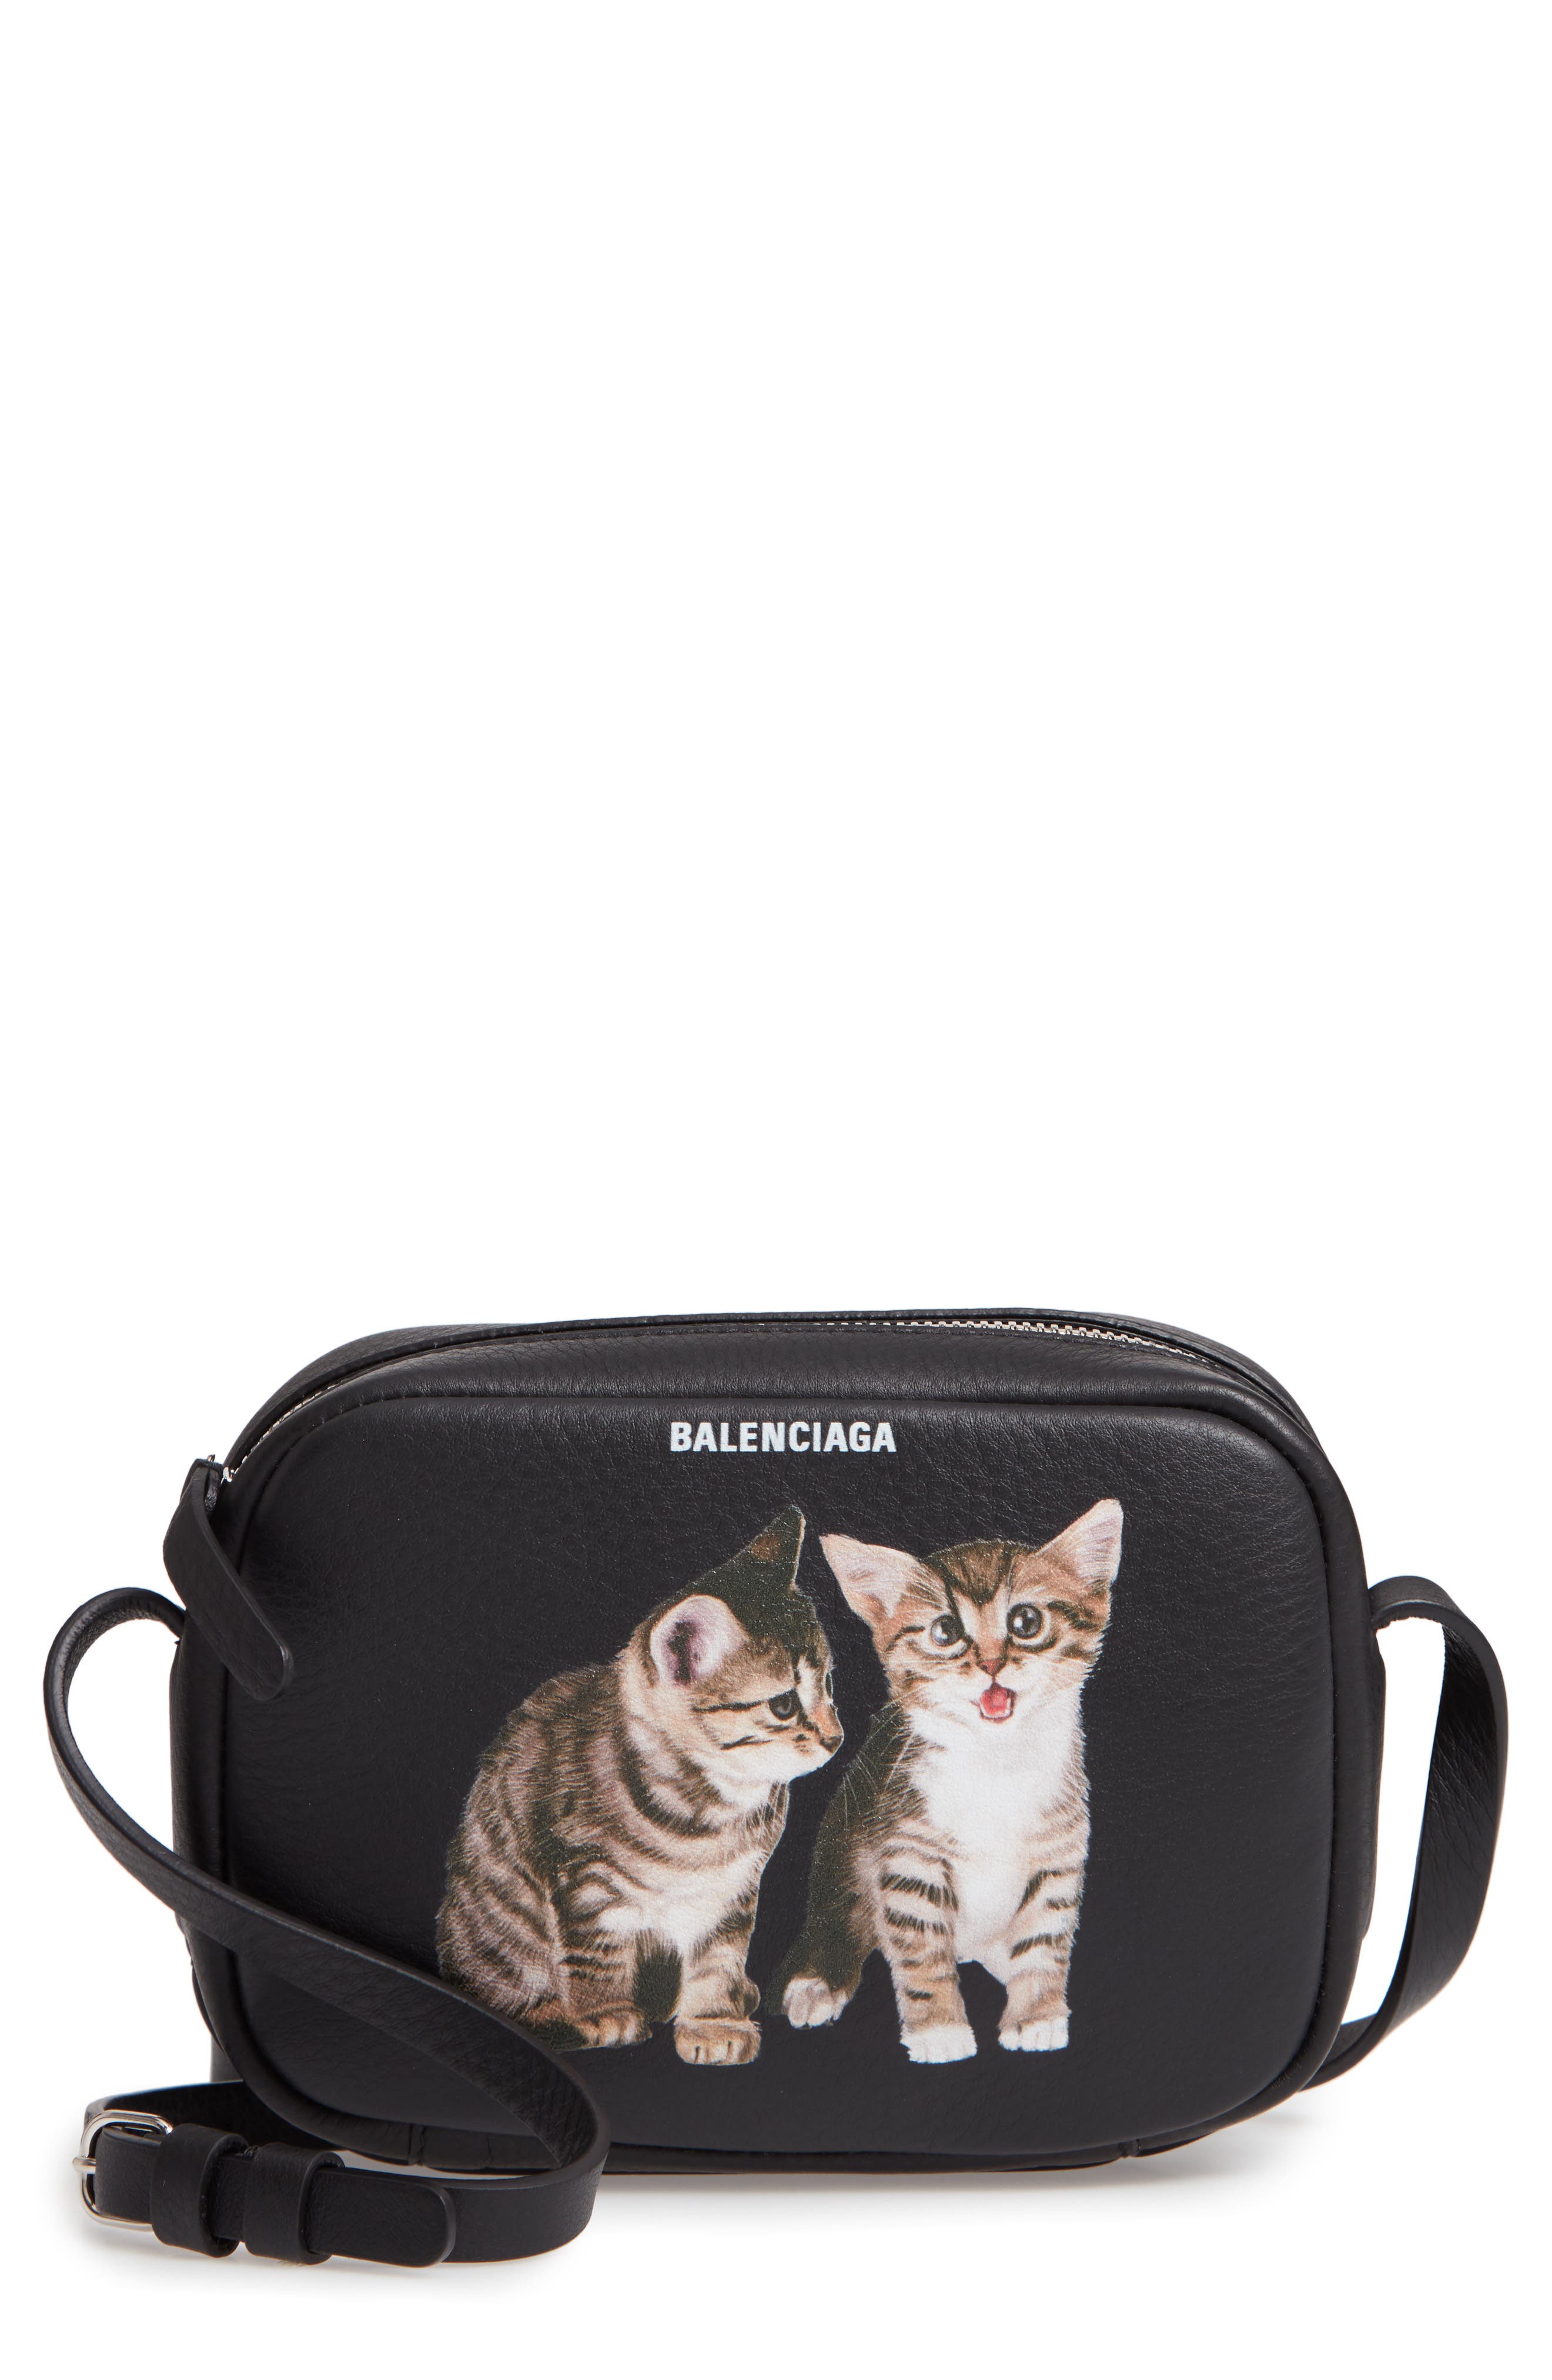 balenciaga kitten camera bag